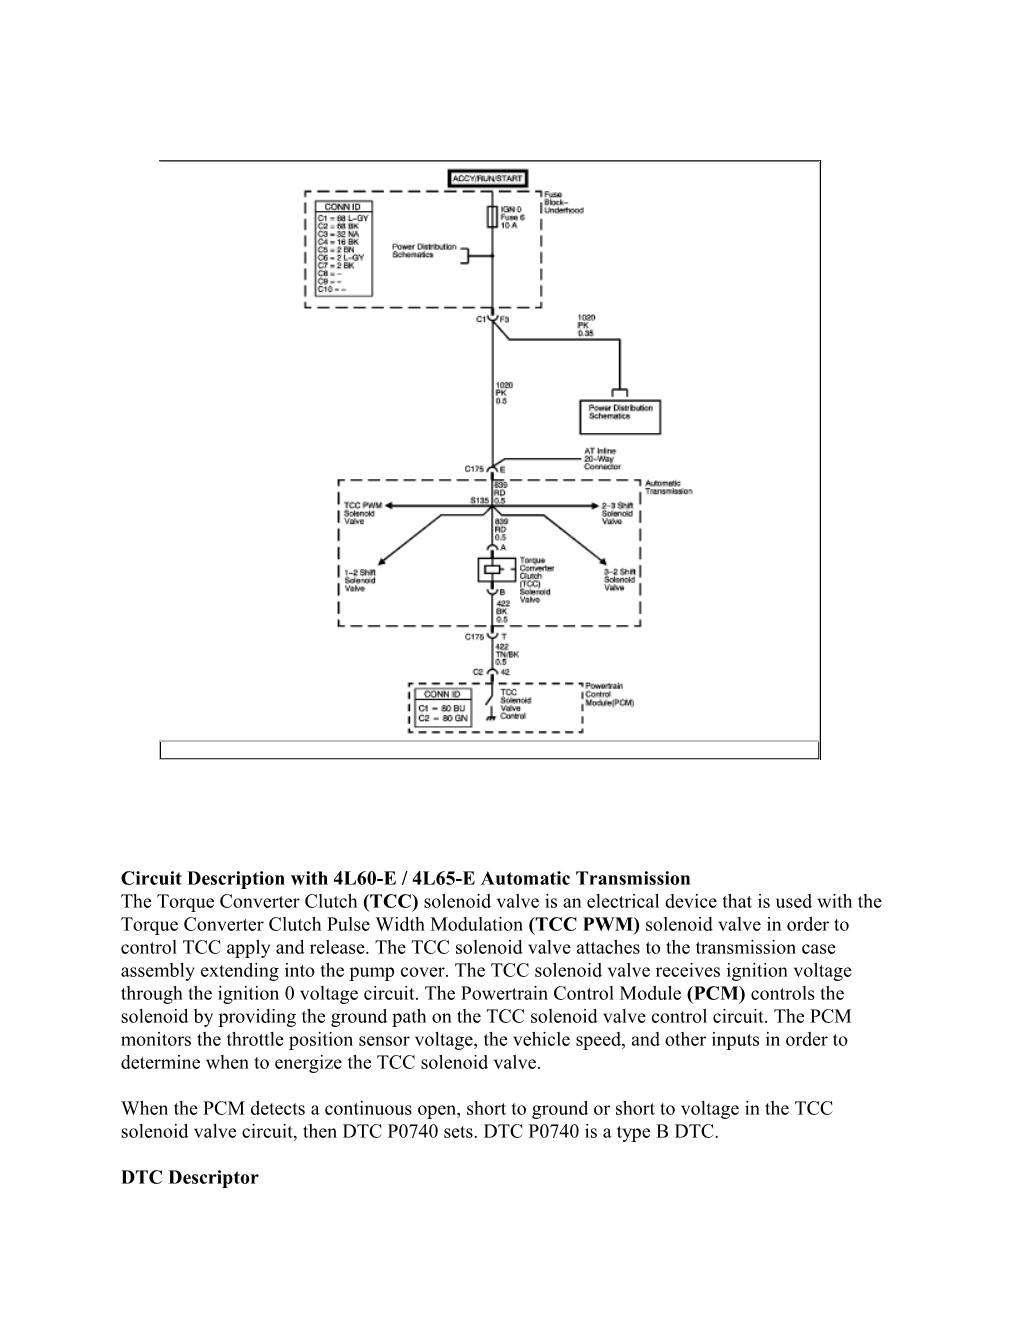 Circuit Description with 4L60-E / 4L65-E Automatic Transmission the Torque Converter Clutch